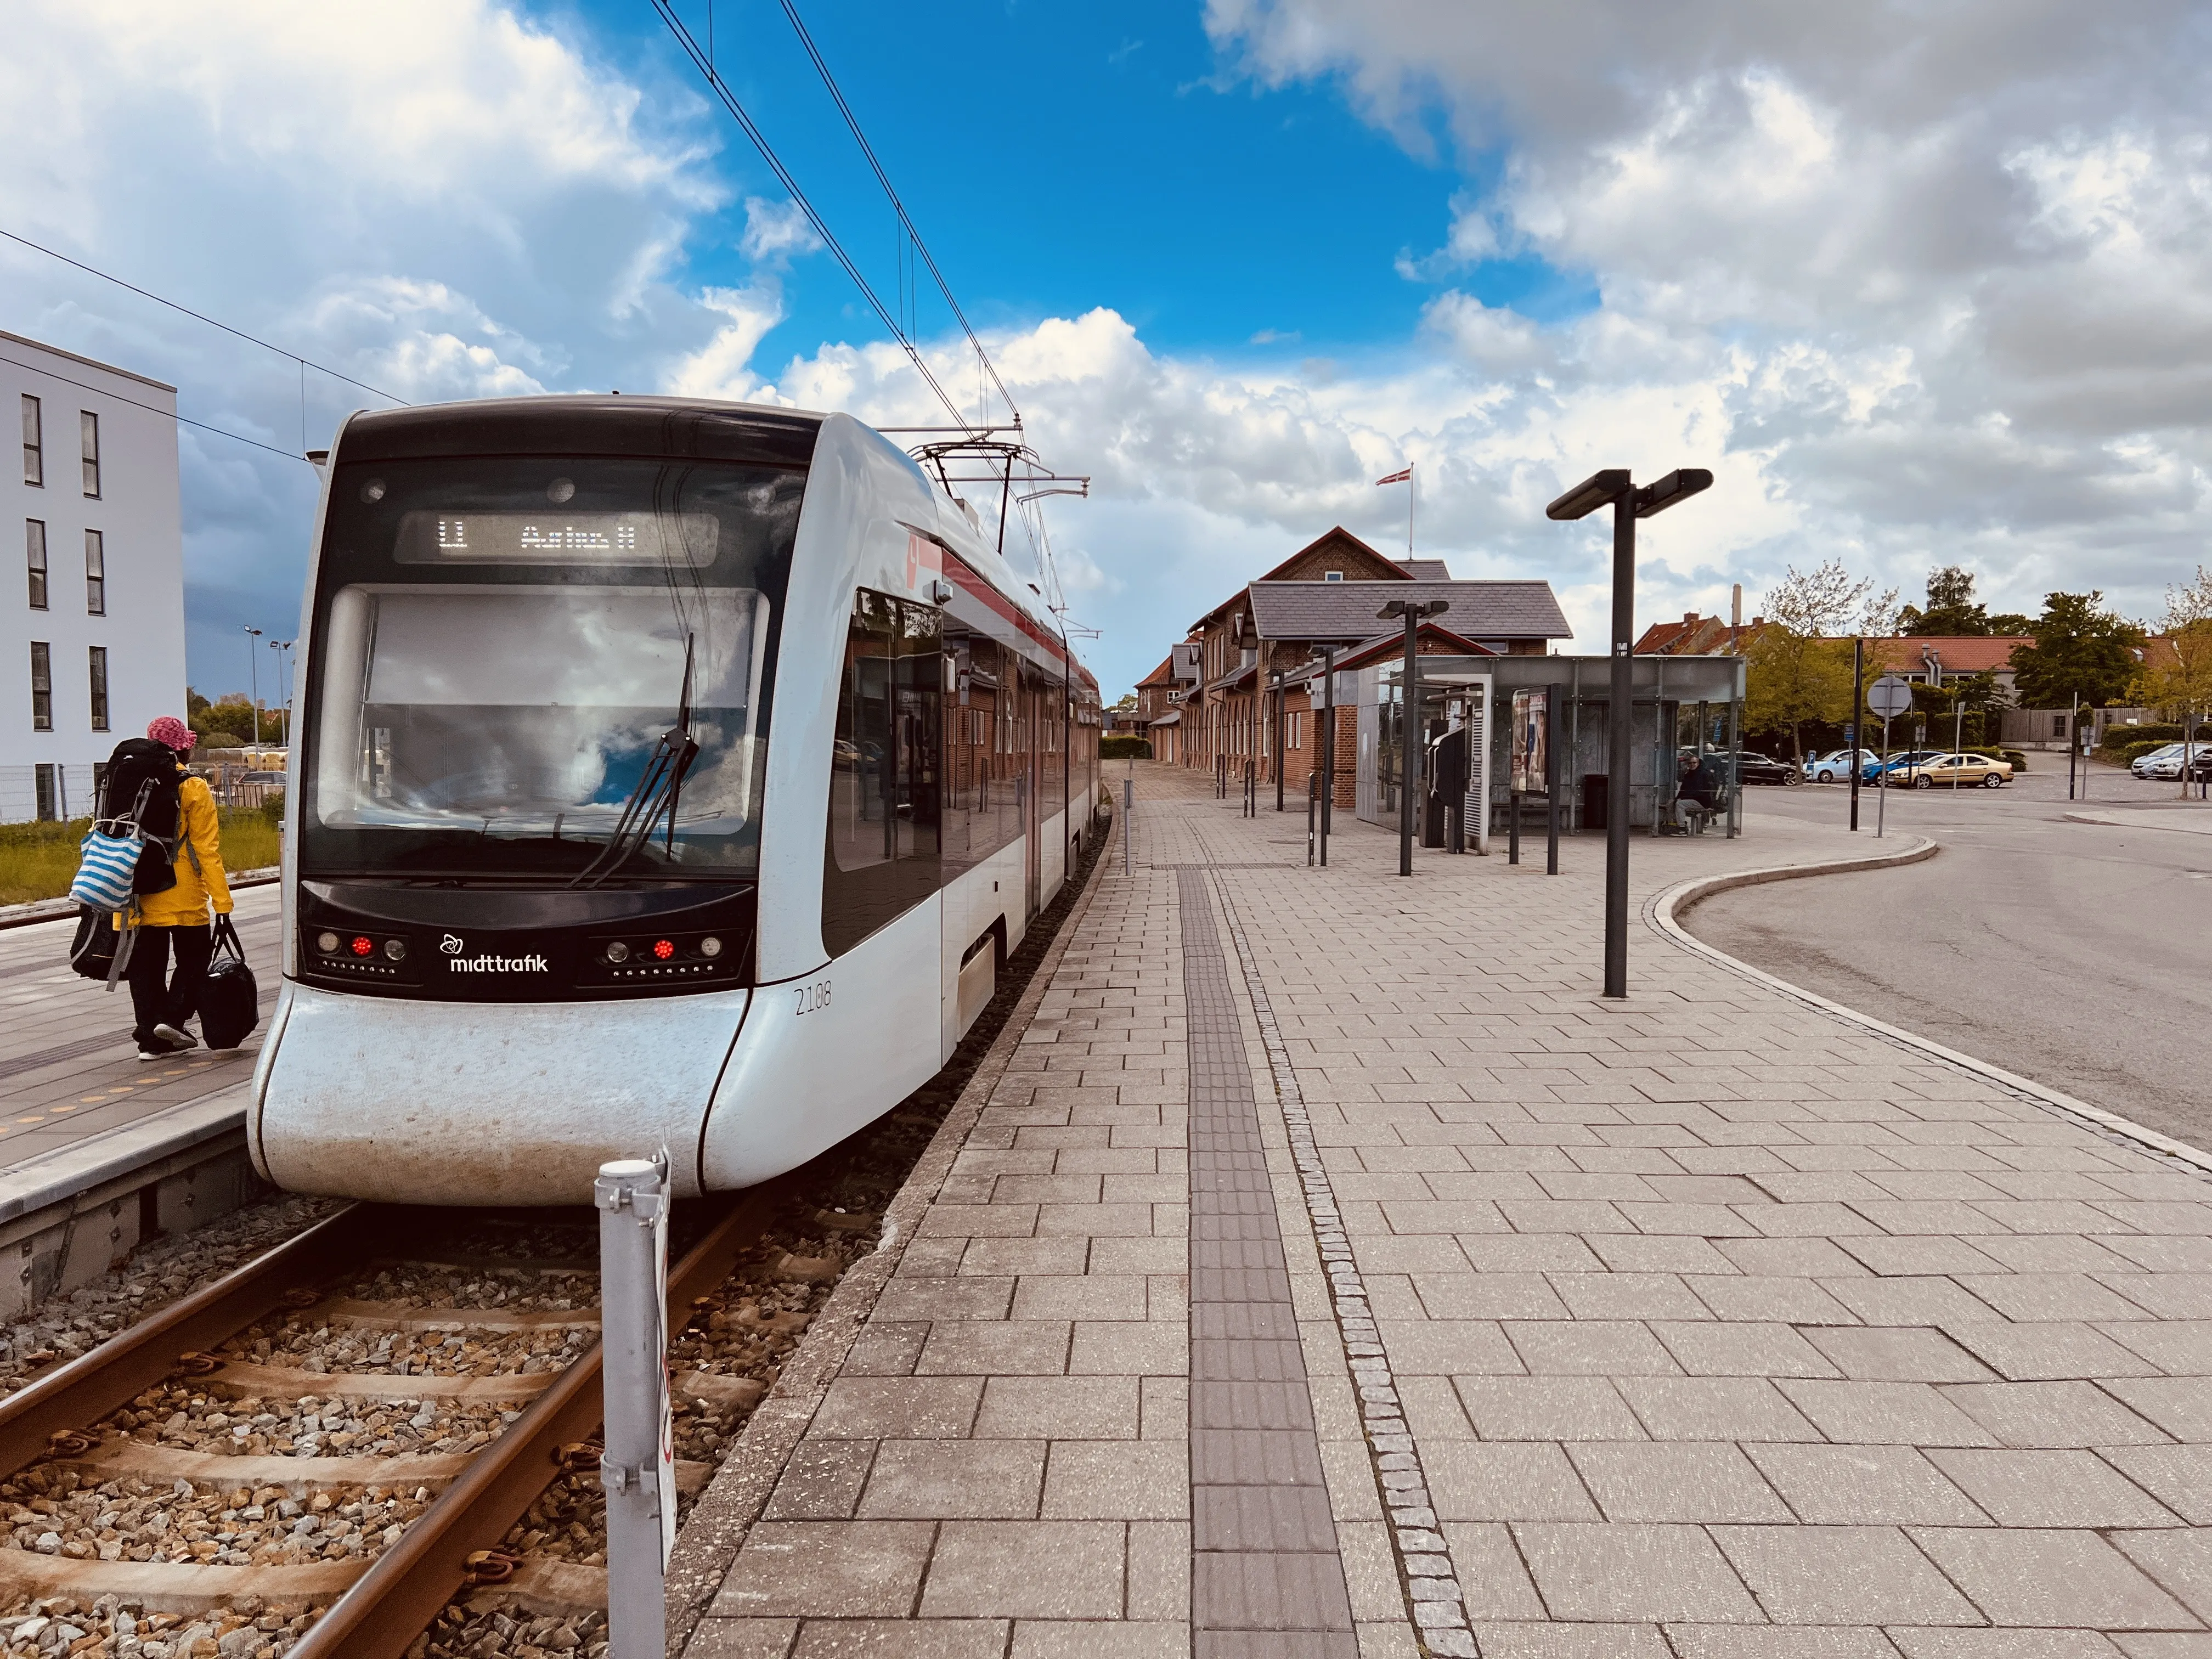 Billede af Aarhus Letbane togsæt 2108 fotograferet ud for Grenaa Letbanestation.